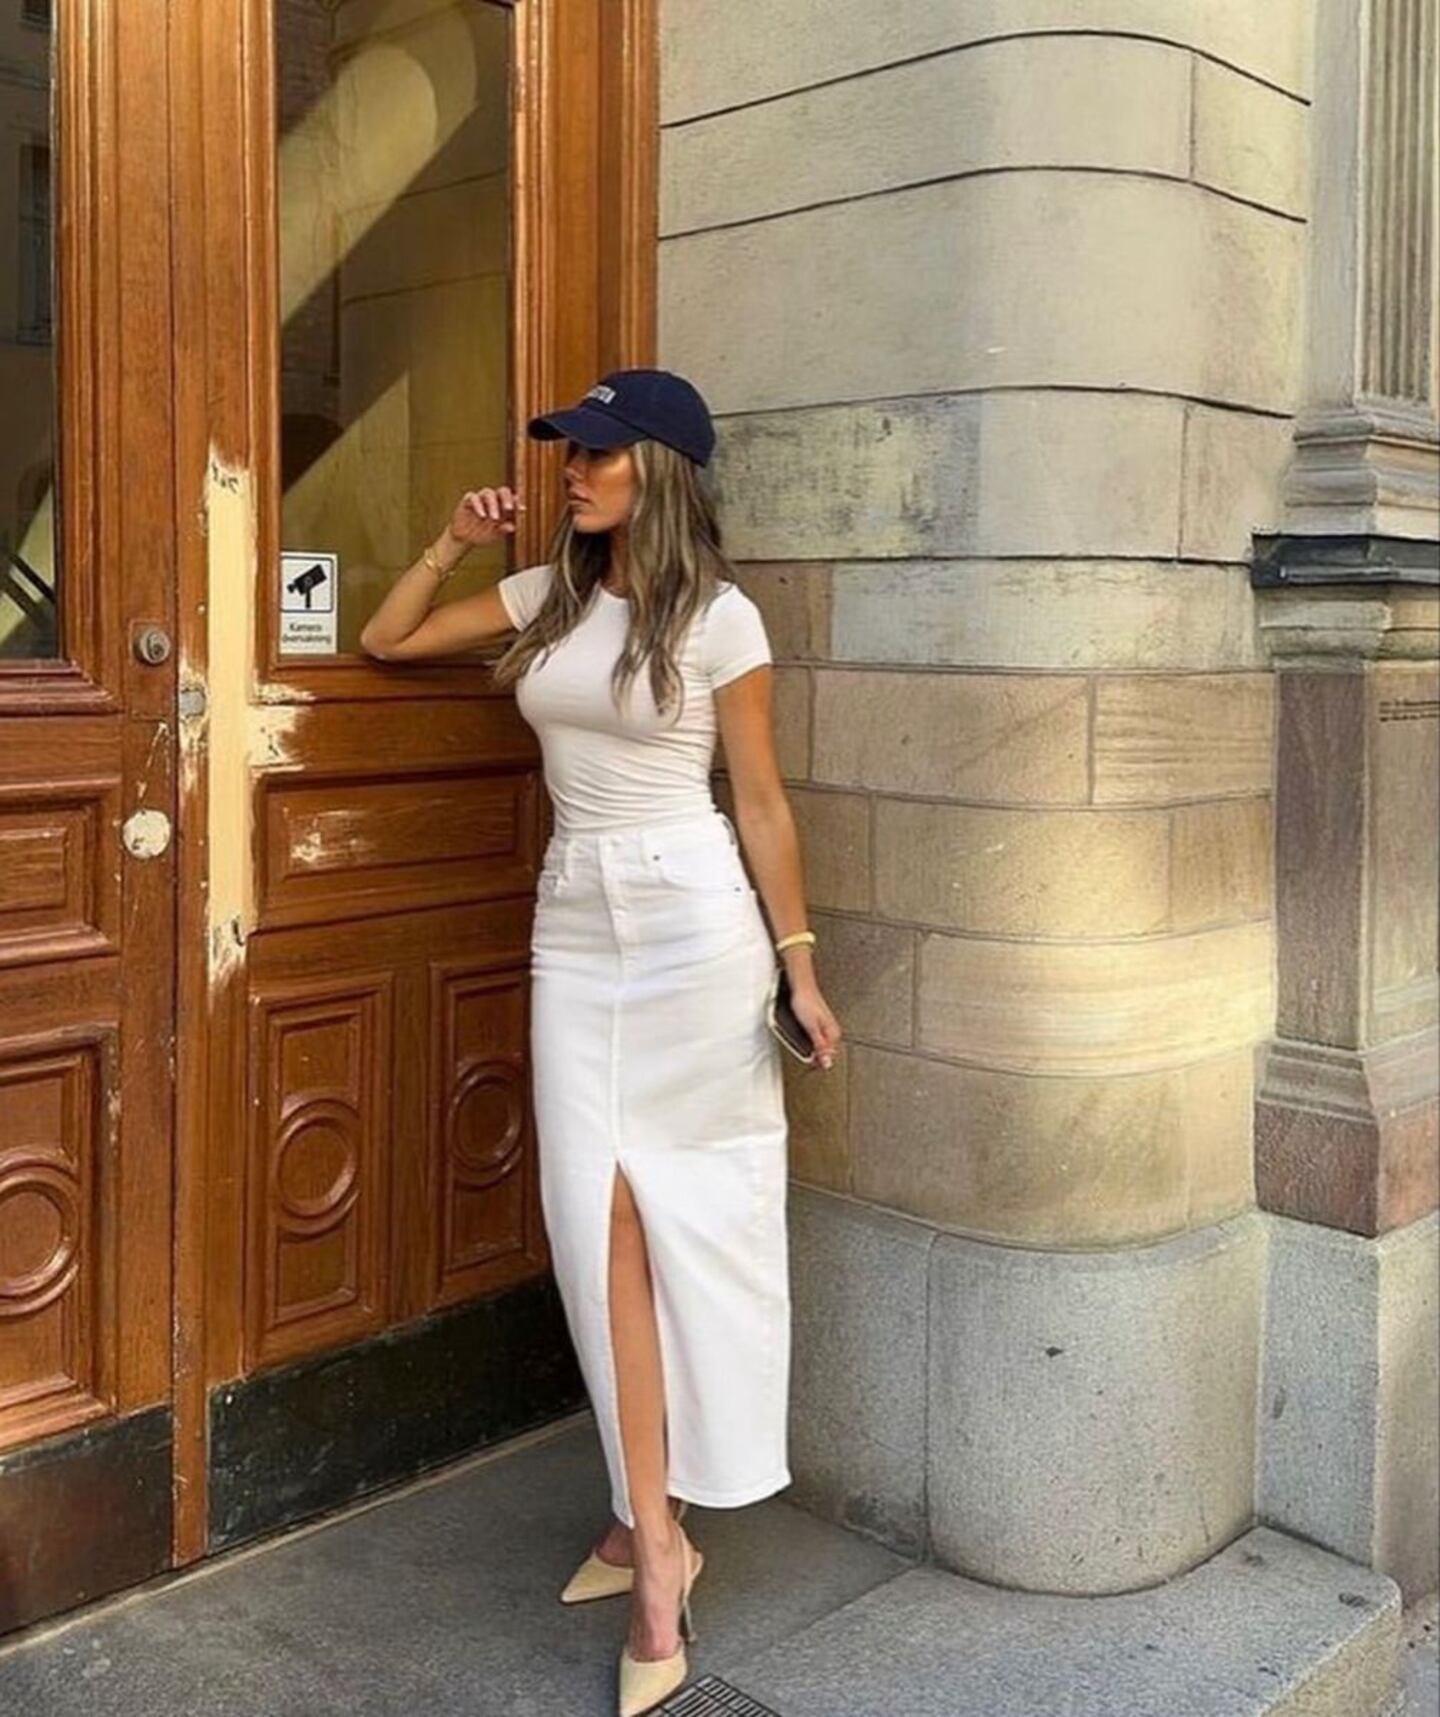 Moda: Como usar saias brancas de forma elegante e moderna? – Metro ...